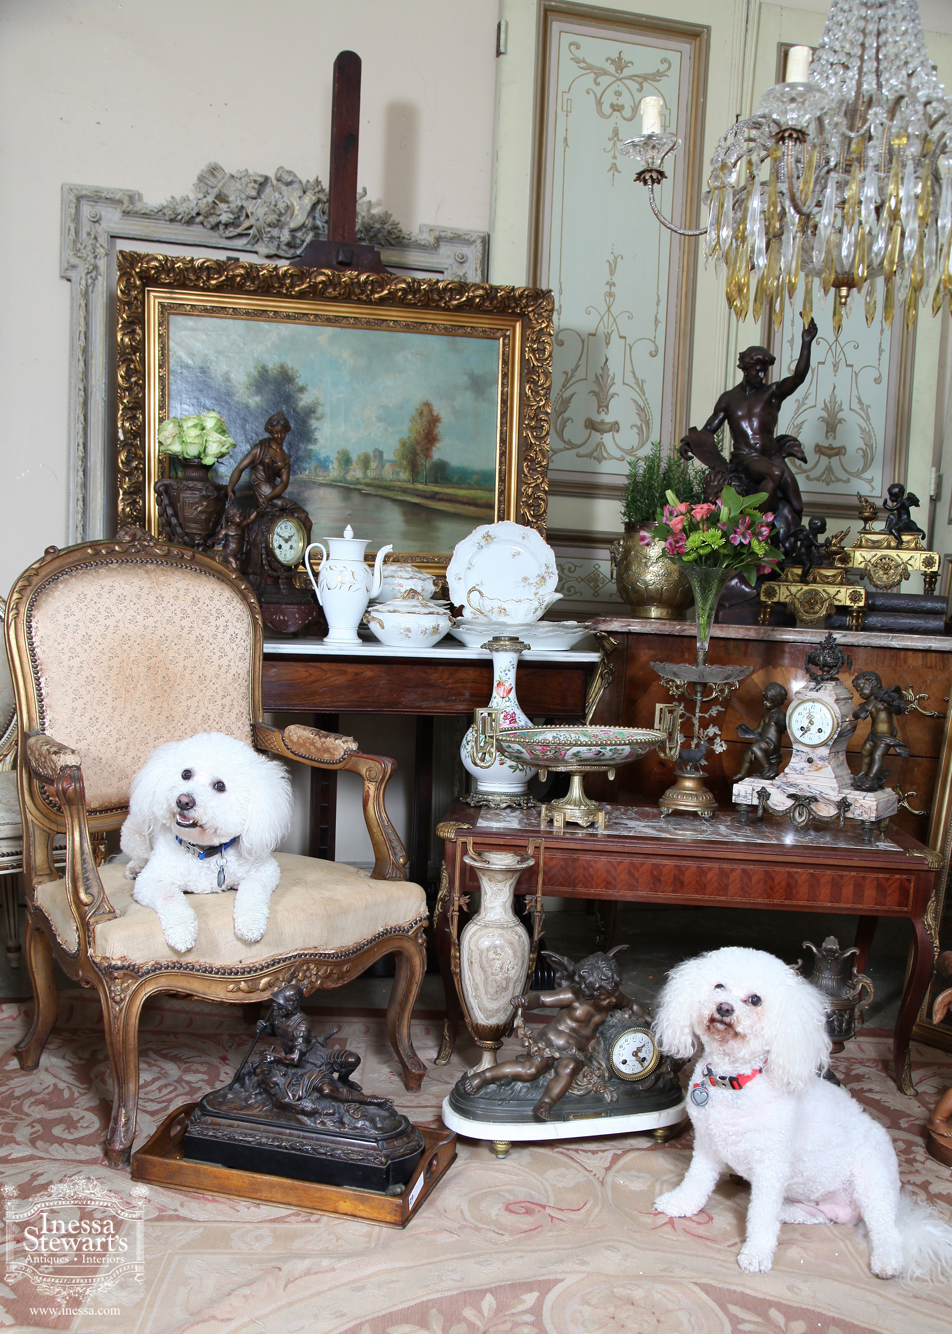 Antique furniture and antique Accessories